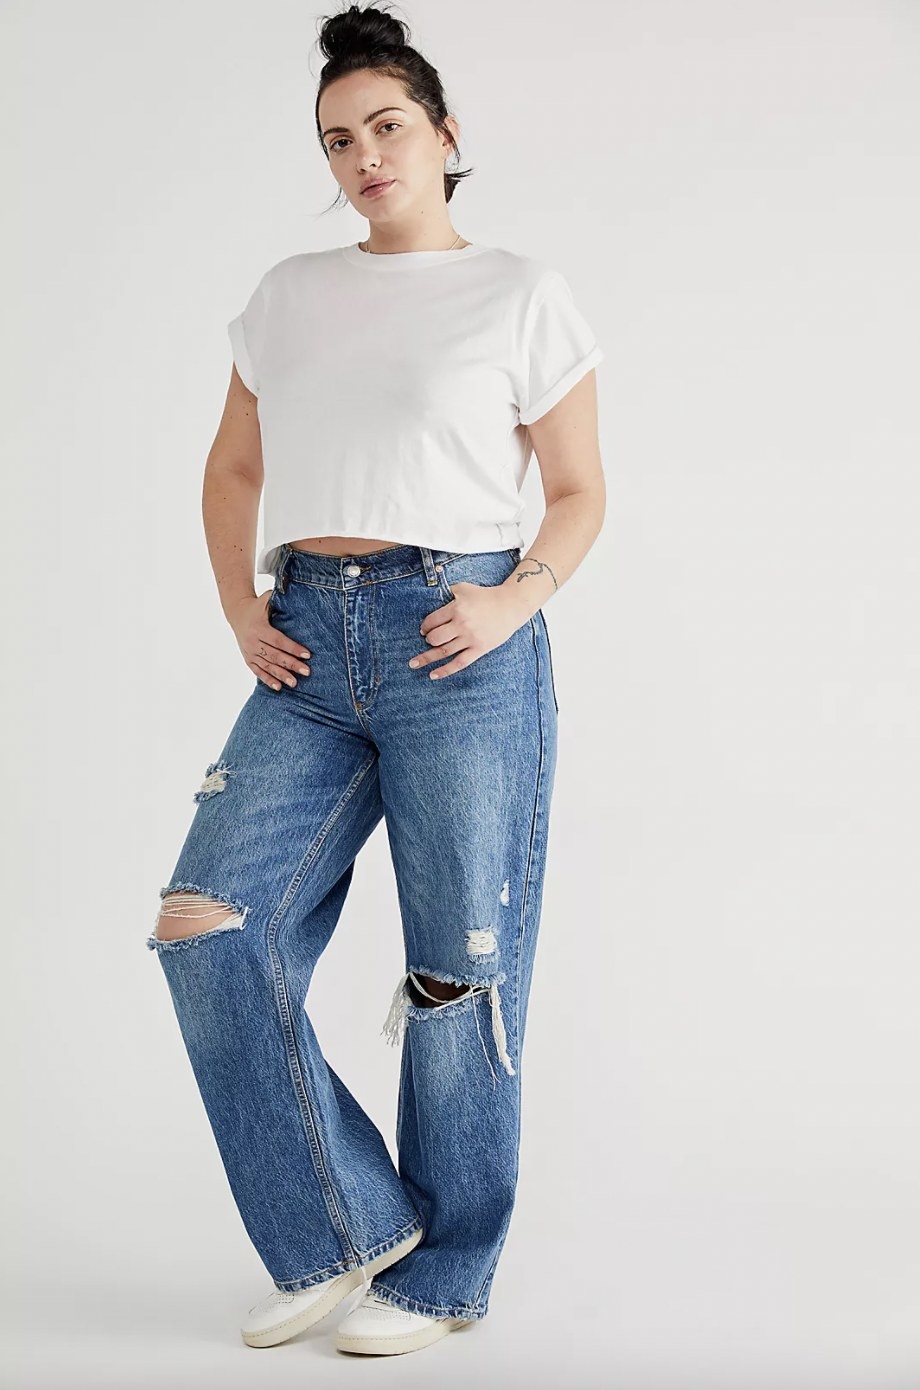 Model wearing blue jeans